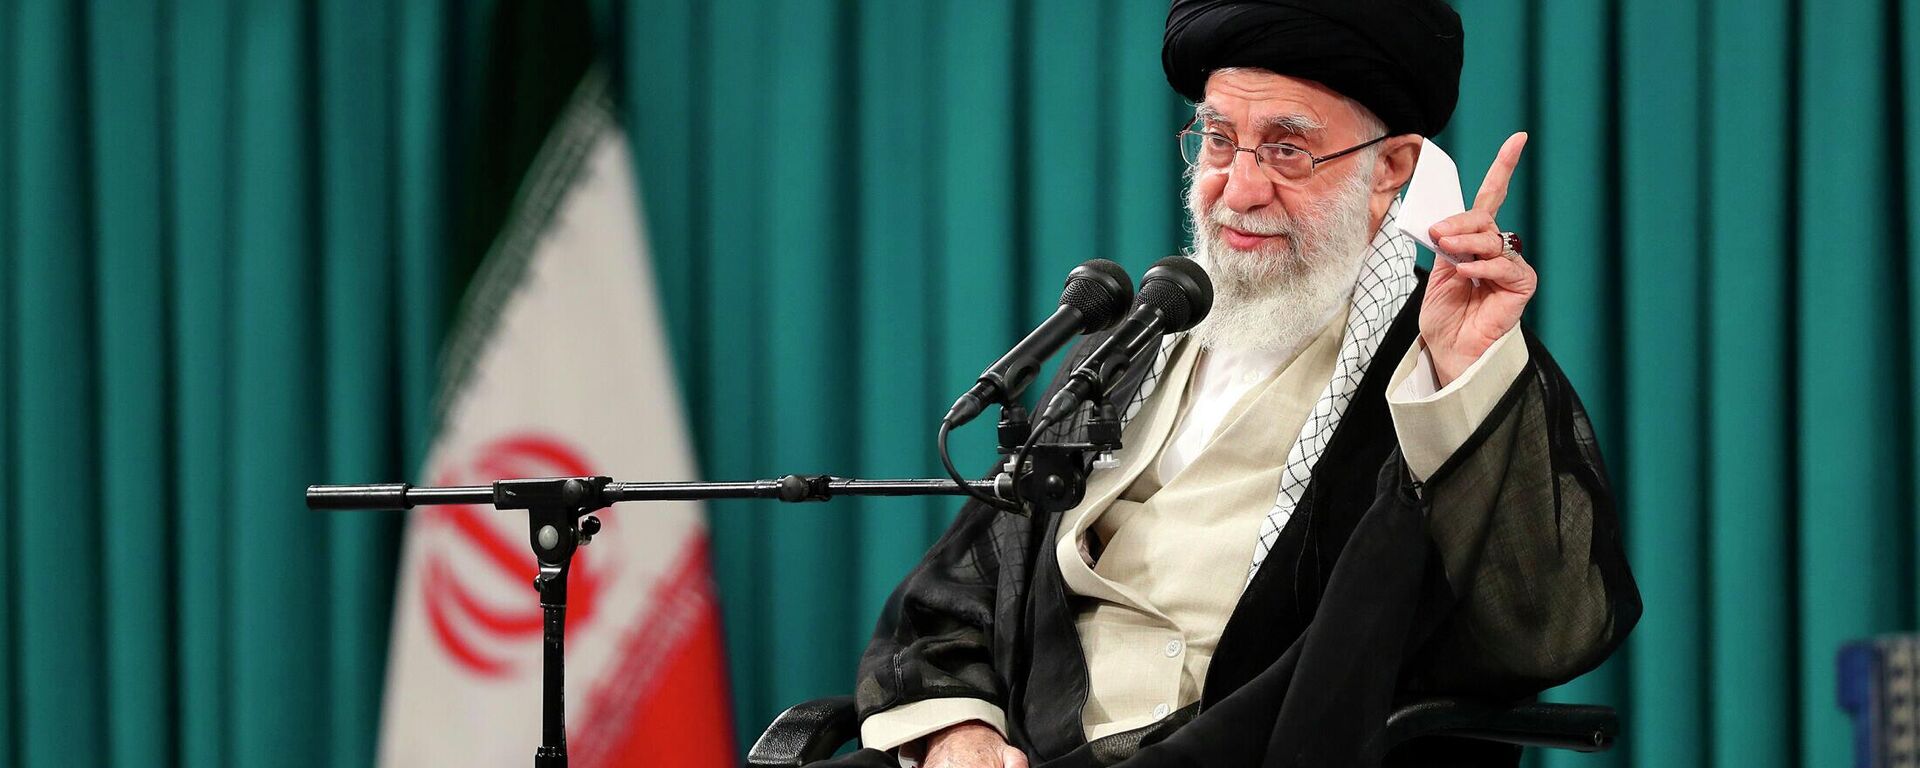 O líder supremo do Irã, aiatolá Ali Khamenei, fala em reunião com grupo de estudantes, em Teerã, no Irã, em 19 de outubro de 2022 (foto divulgada pelo site oficial do escritório do líder supremo iraniano) - Sputnik Brasil, 1920, 27.11.2022